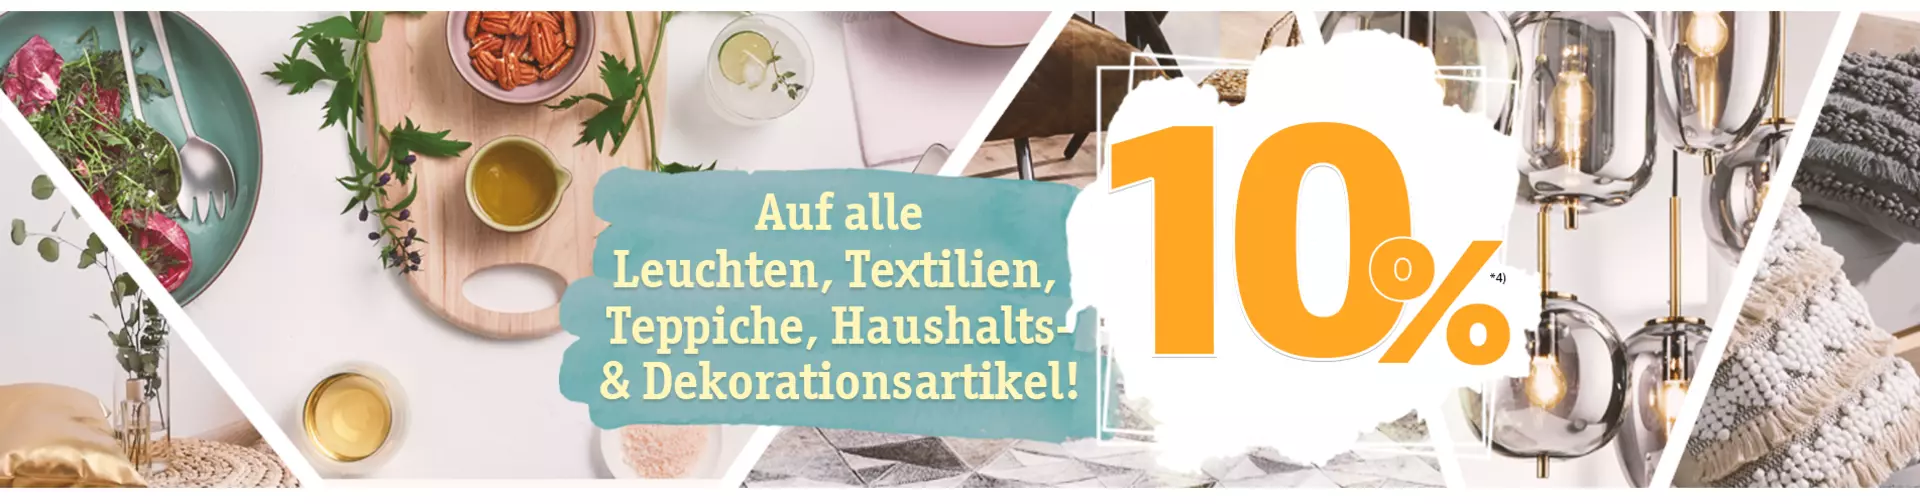 Frühjahrsaktion bei Möbel Inhofer - Jetzt 10% Rabatt auf Fachsortiment. Gleich online bestellen und sparen!